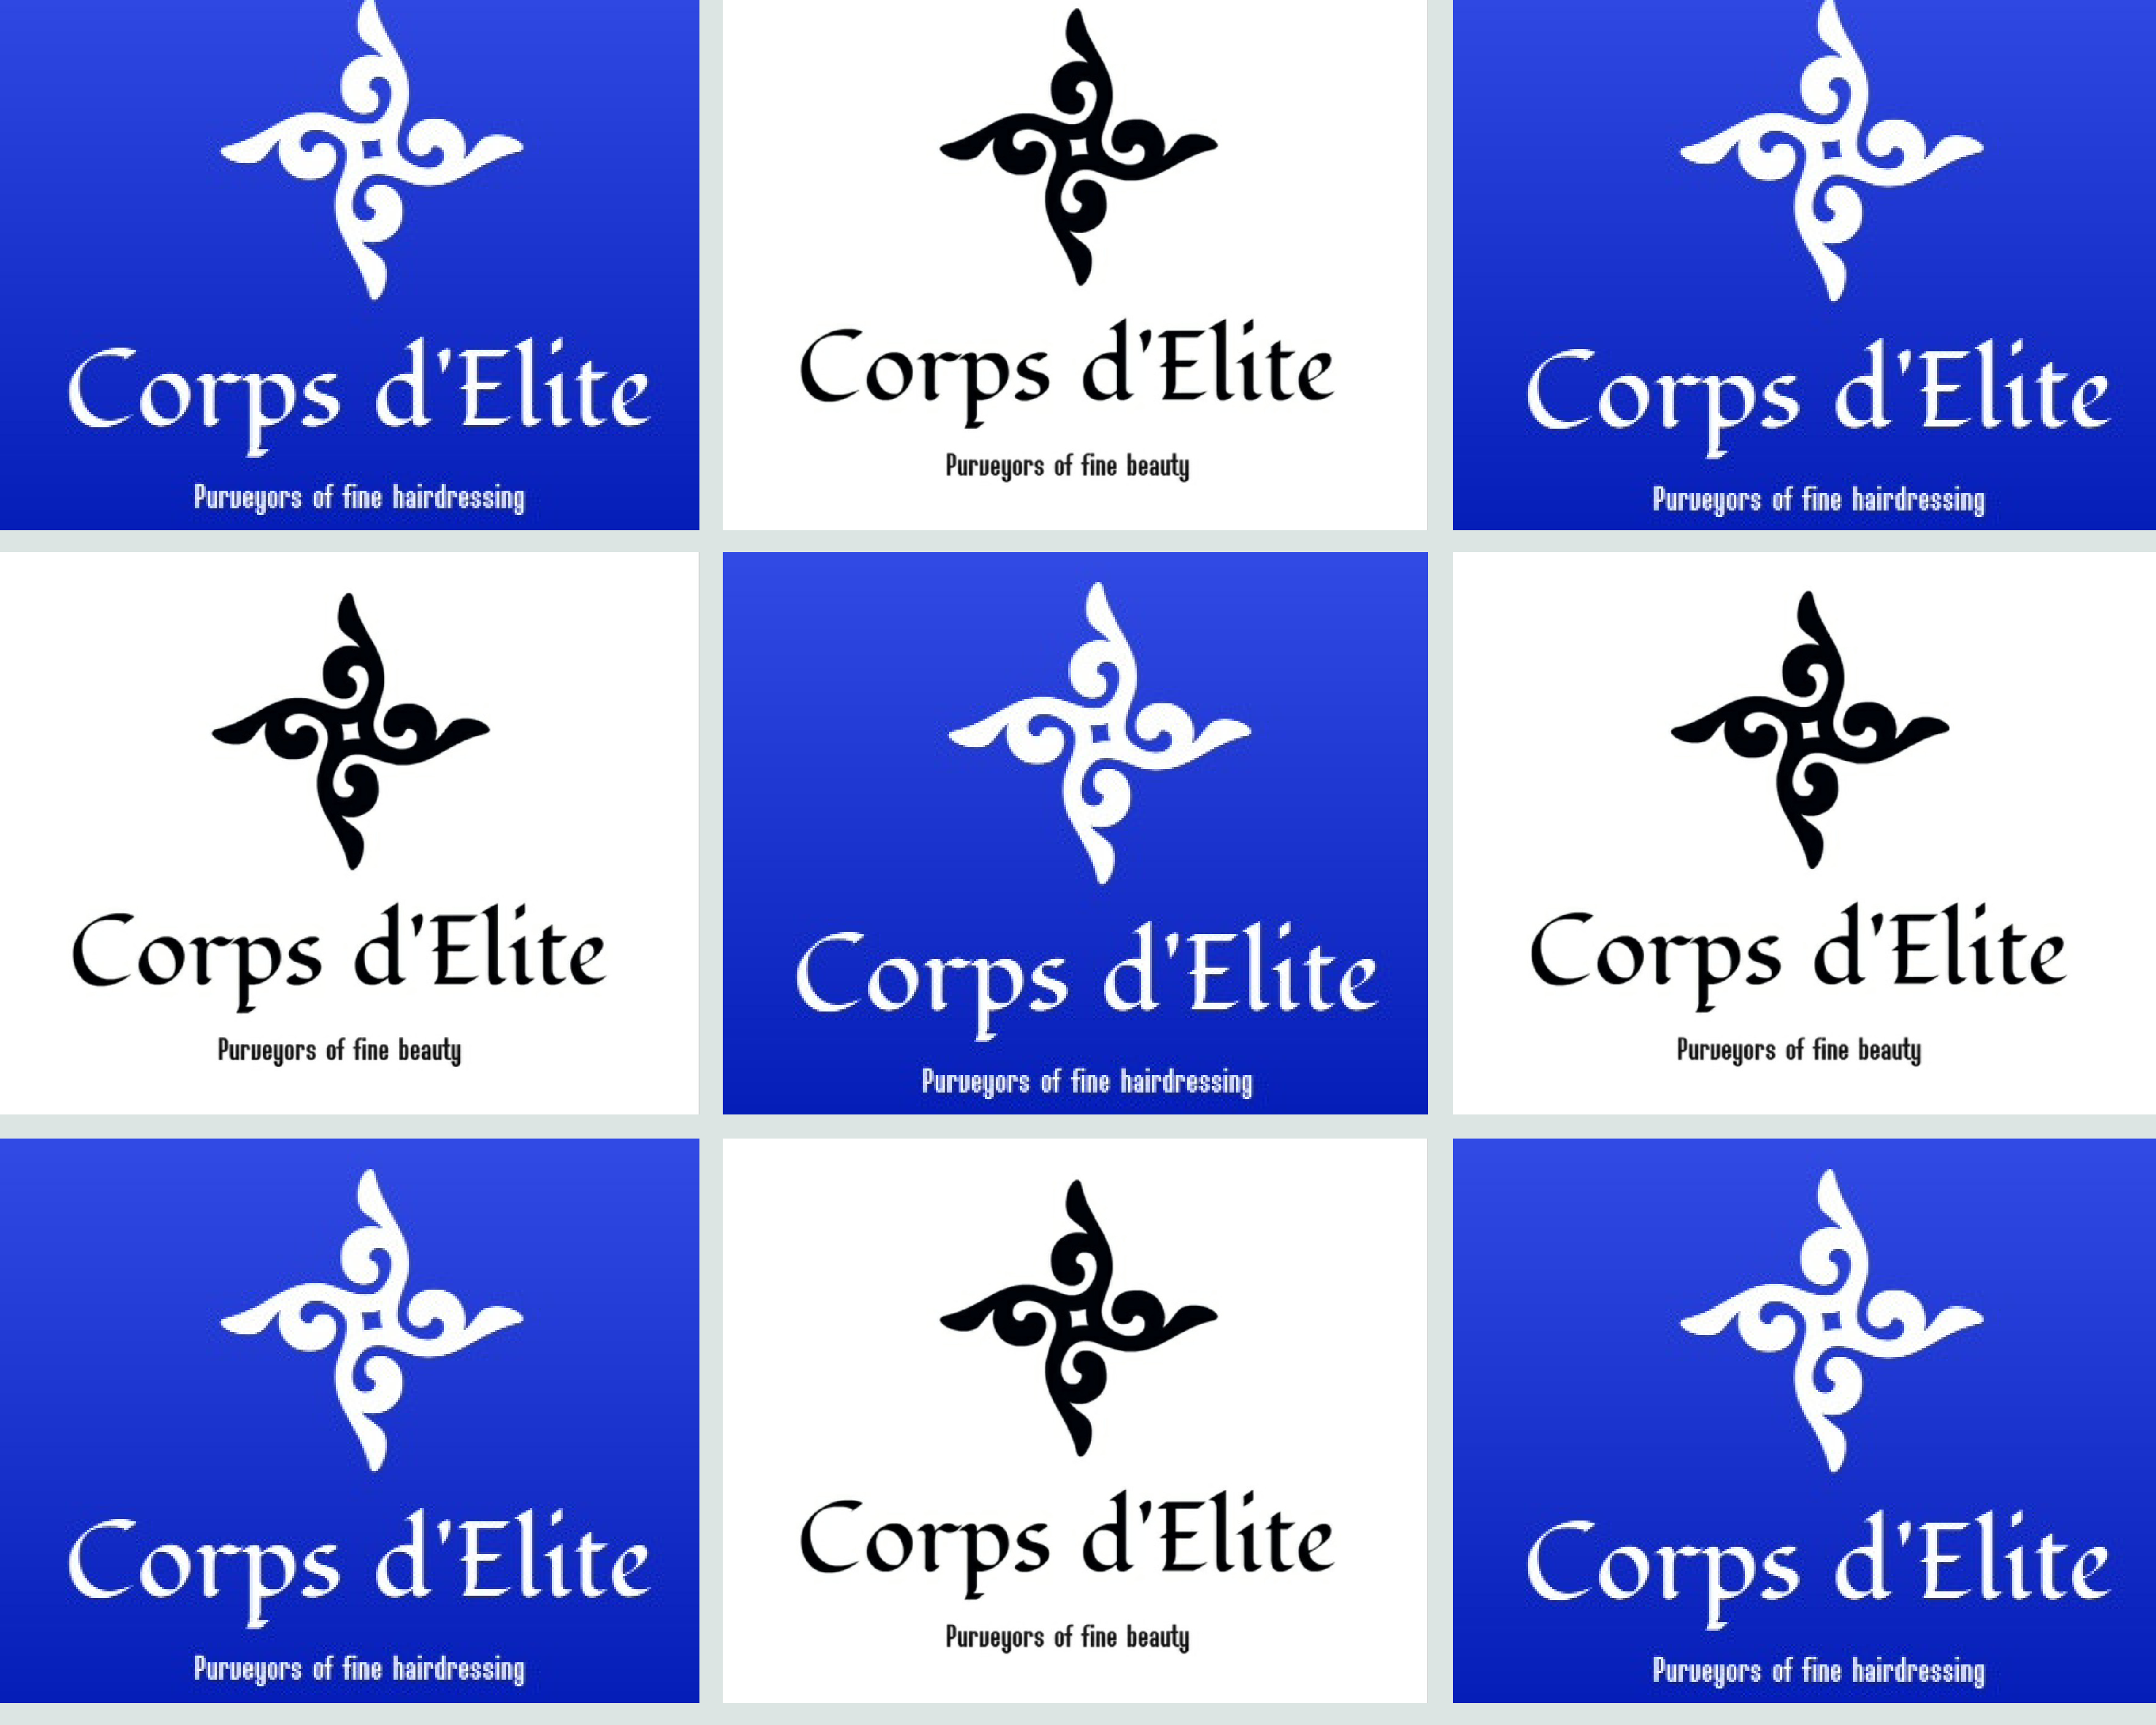 Corps d'Elite Beauty